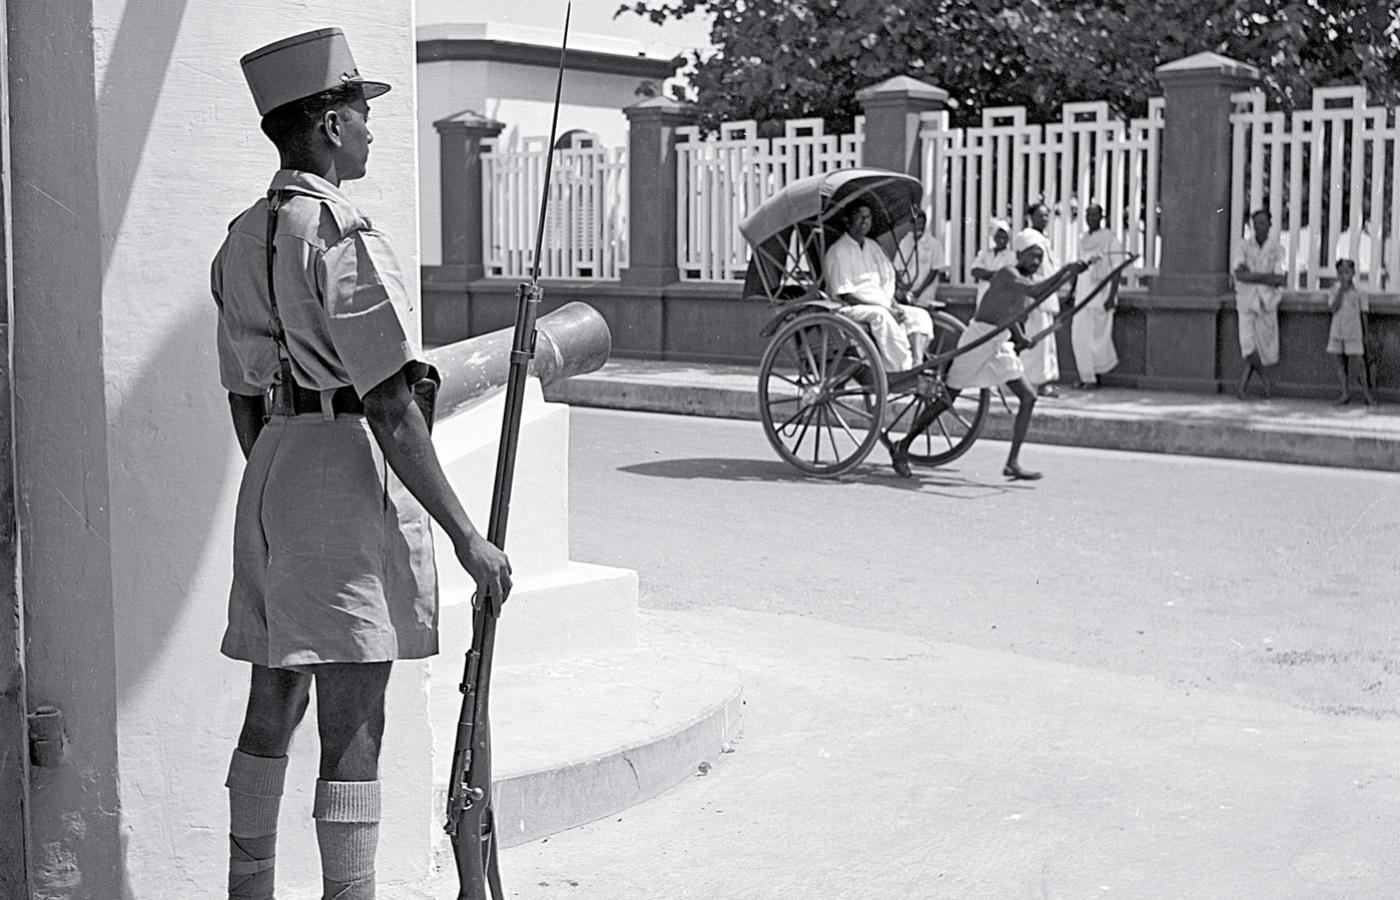 Strażnik przed budynkiem władz w Pondicherry (ob. Puducherry, Indie), ok. 1950 r.